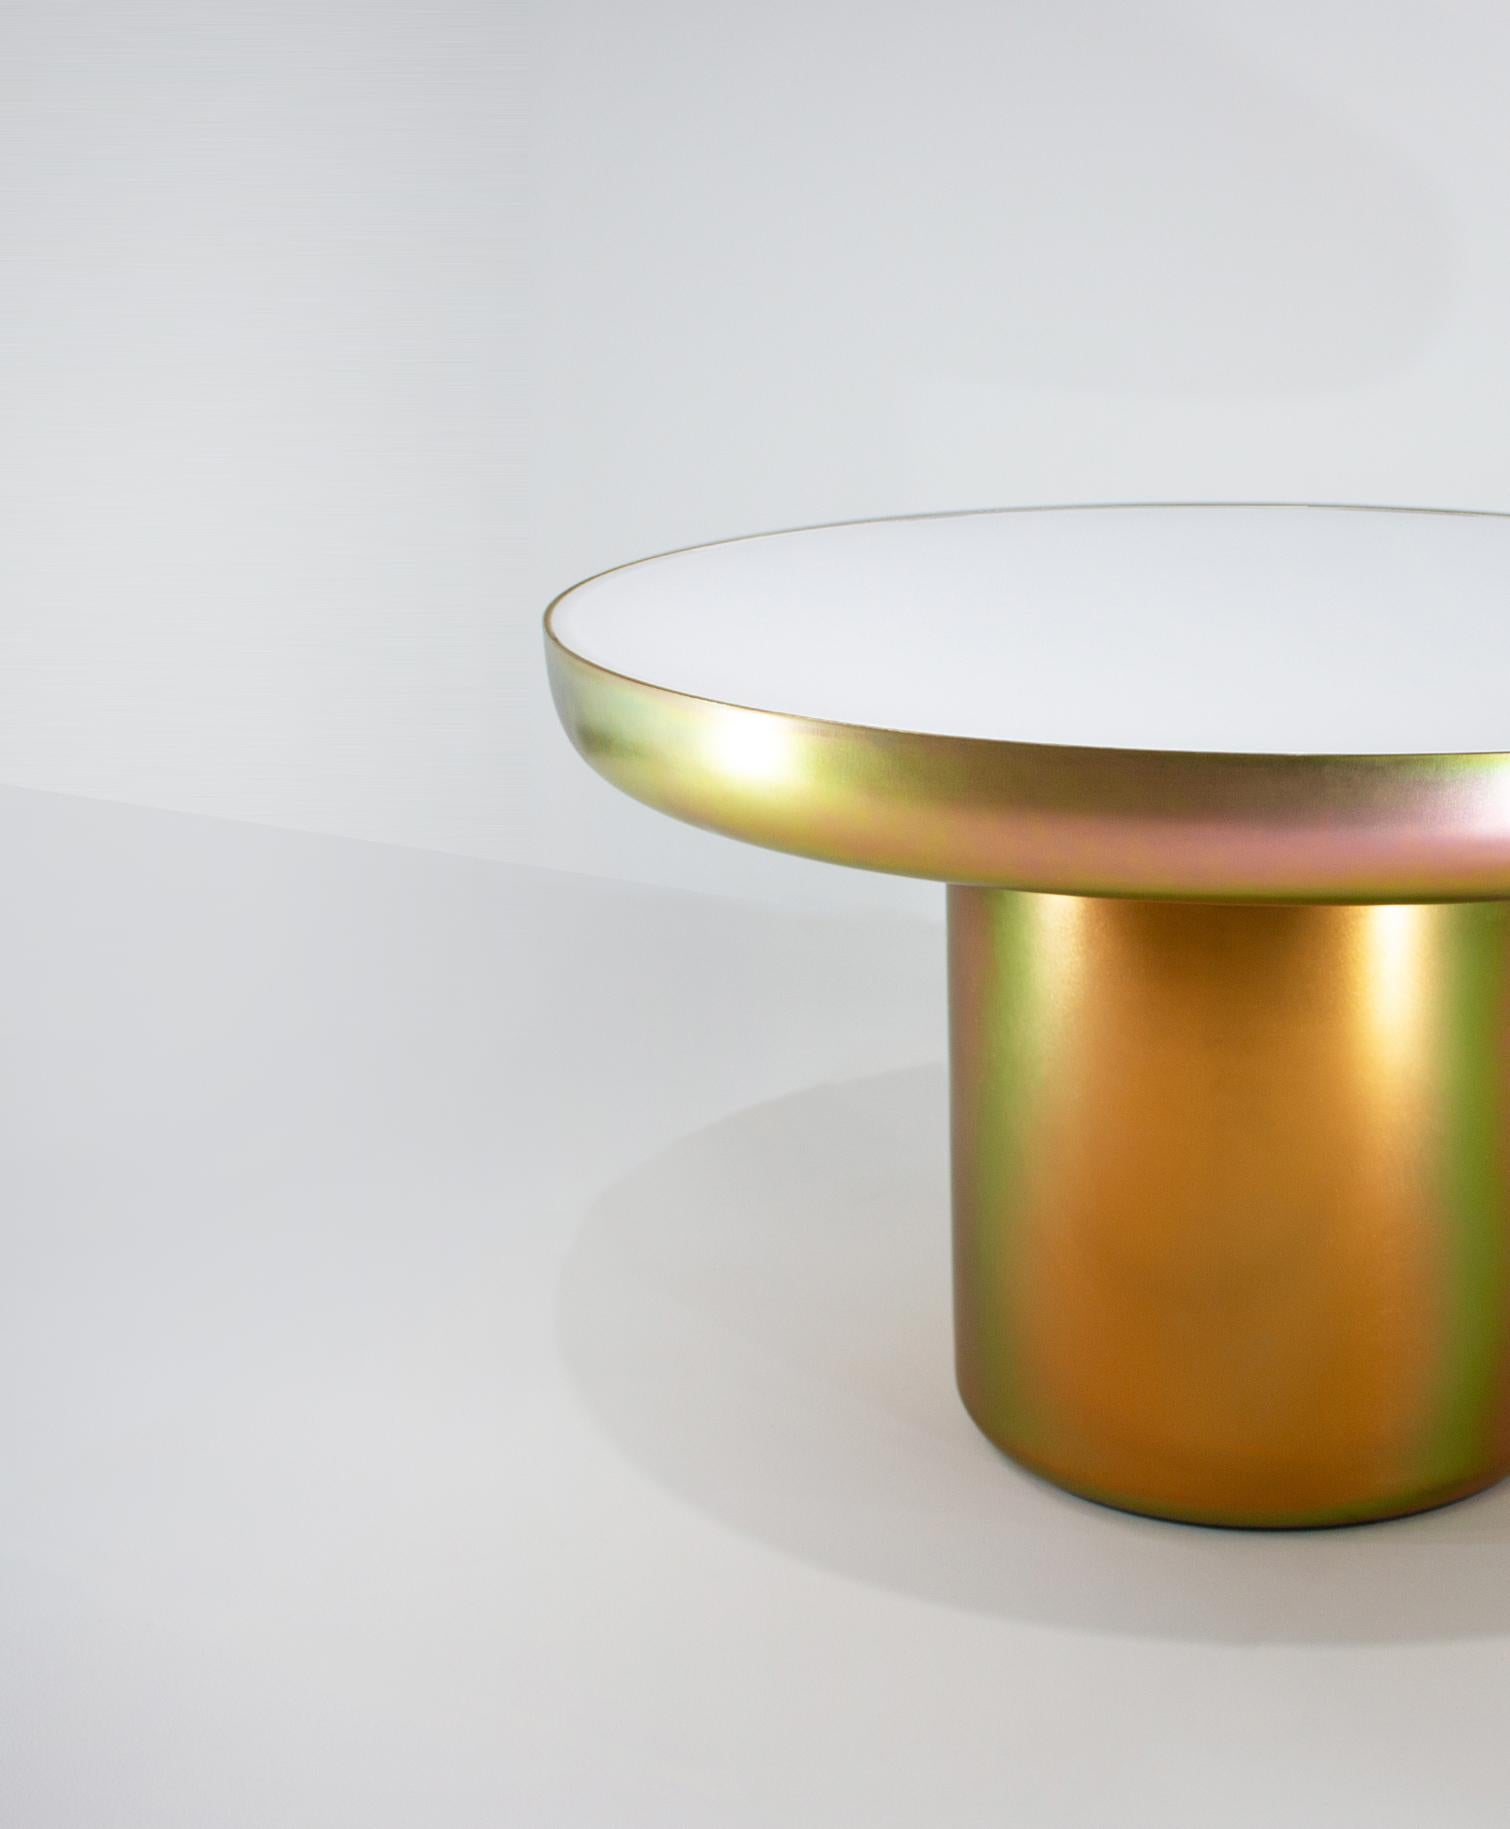 Mood Coffee Zinc est une table visuellement légère, sculpturale et forte, revêtue d'une finition qui élève la forme et célèbre la couleur. La base est revêtue d'une couche de zinc, une finition performante qui permet à la pièce de refléter les